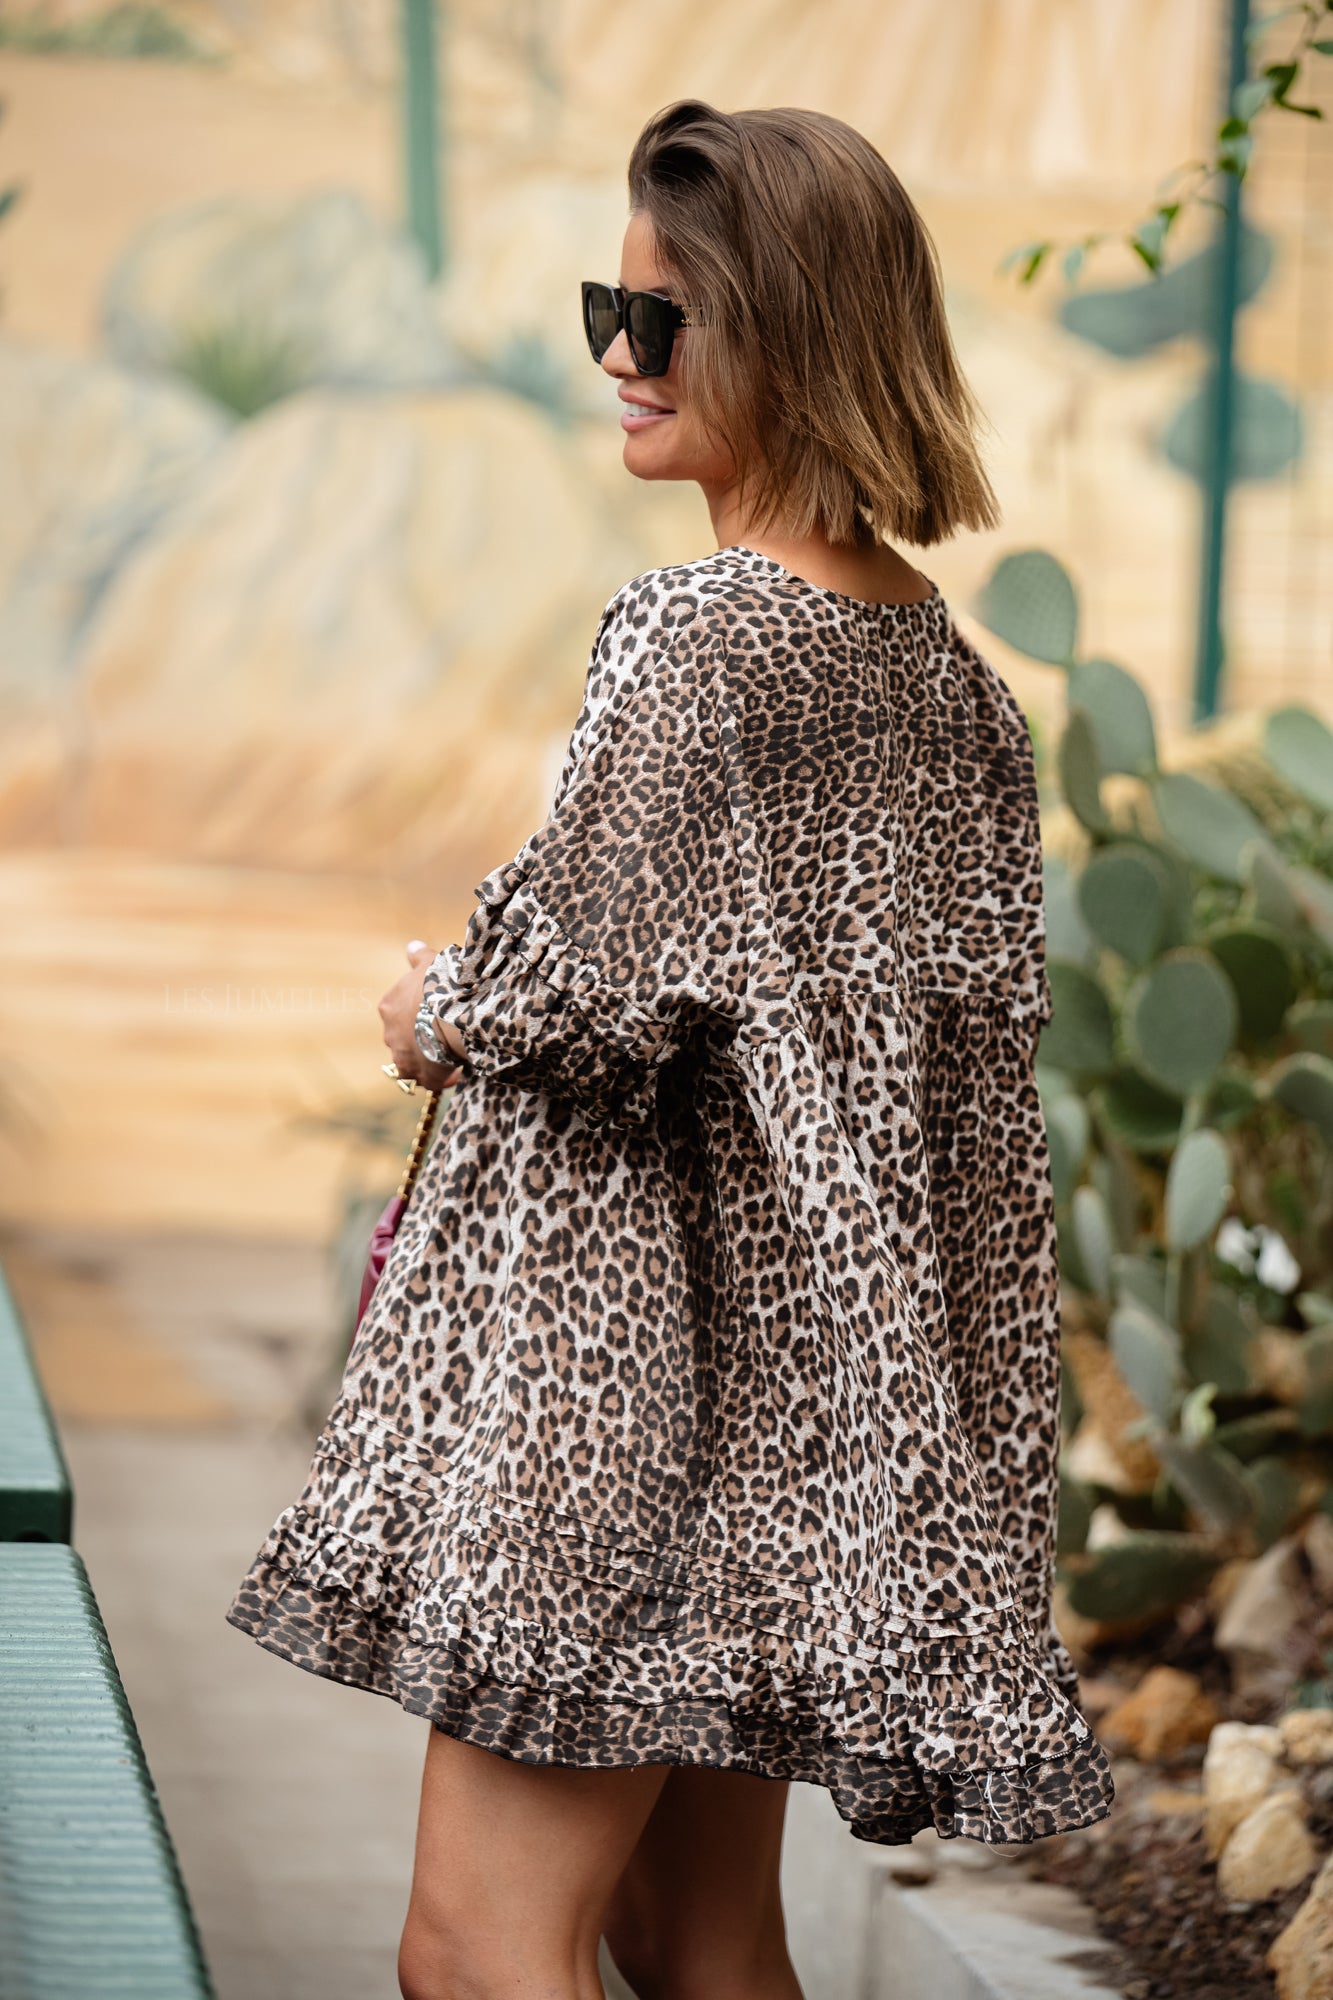 Chrissy jurkje luipaard print